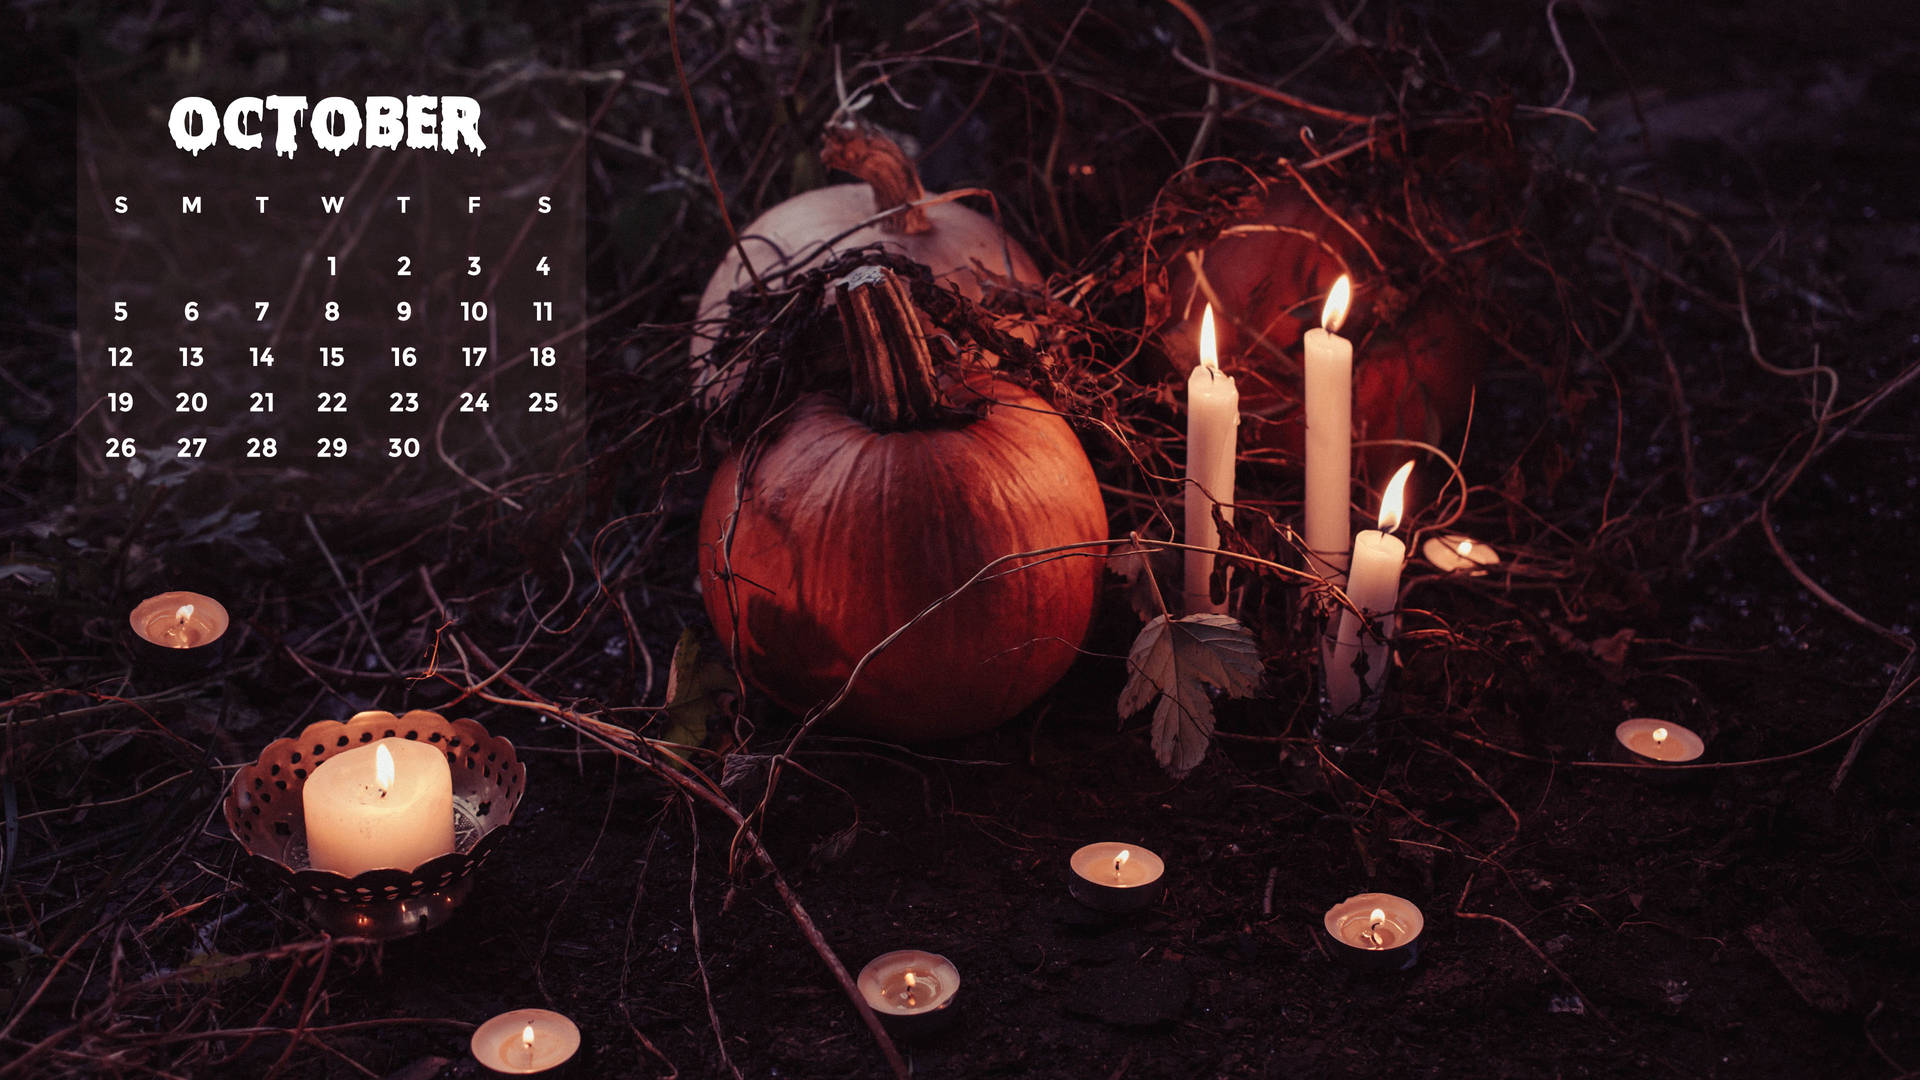 October 2021 Calendar Fall Halloween